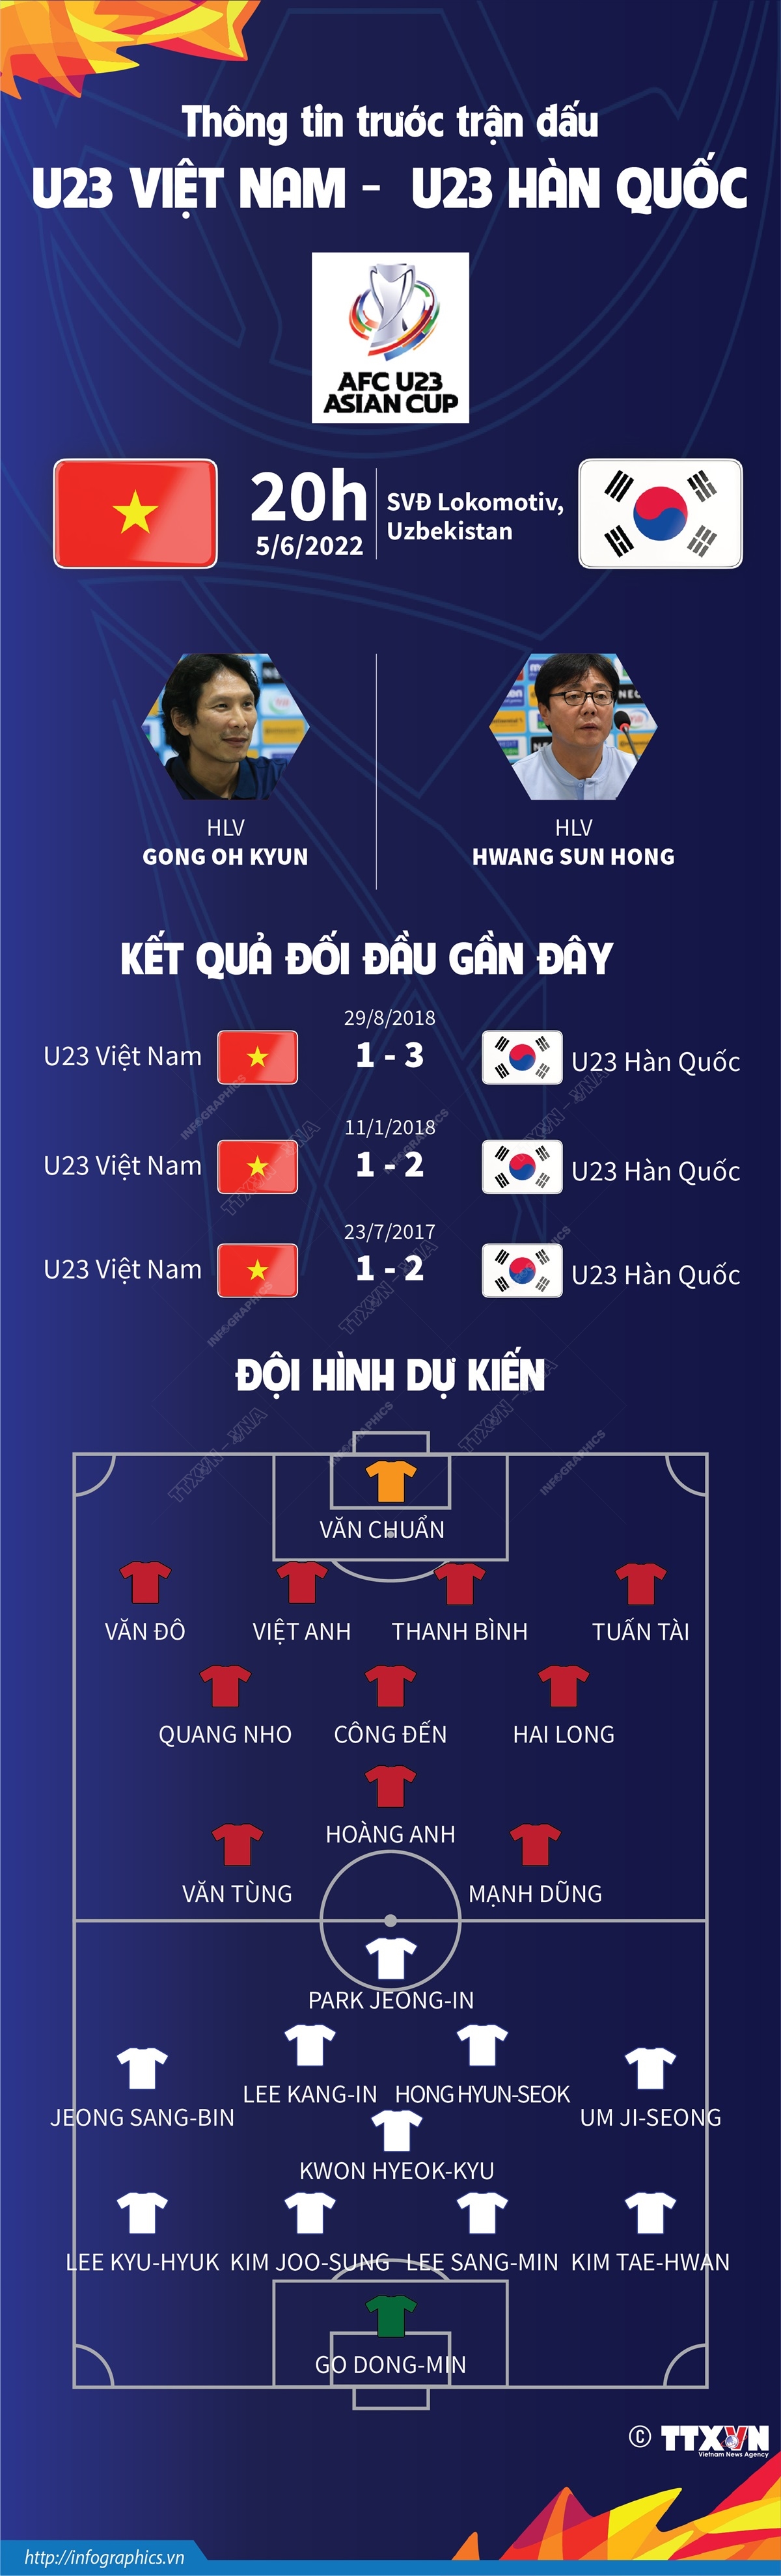 Cùng xem khoảnh khắc lịch sử của đội tuyển U23 Việt Nam khi đối đầu với đối thủ U23 Hàn Quốc trong trận đấu đầy kịch tính!!